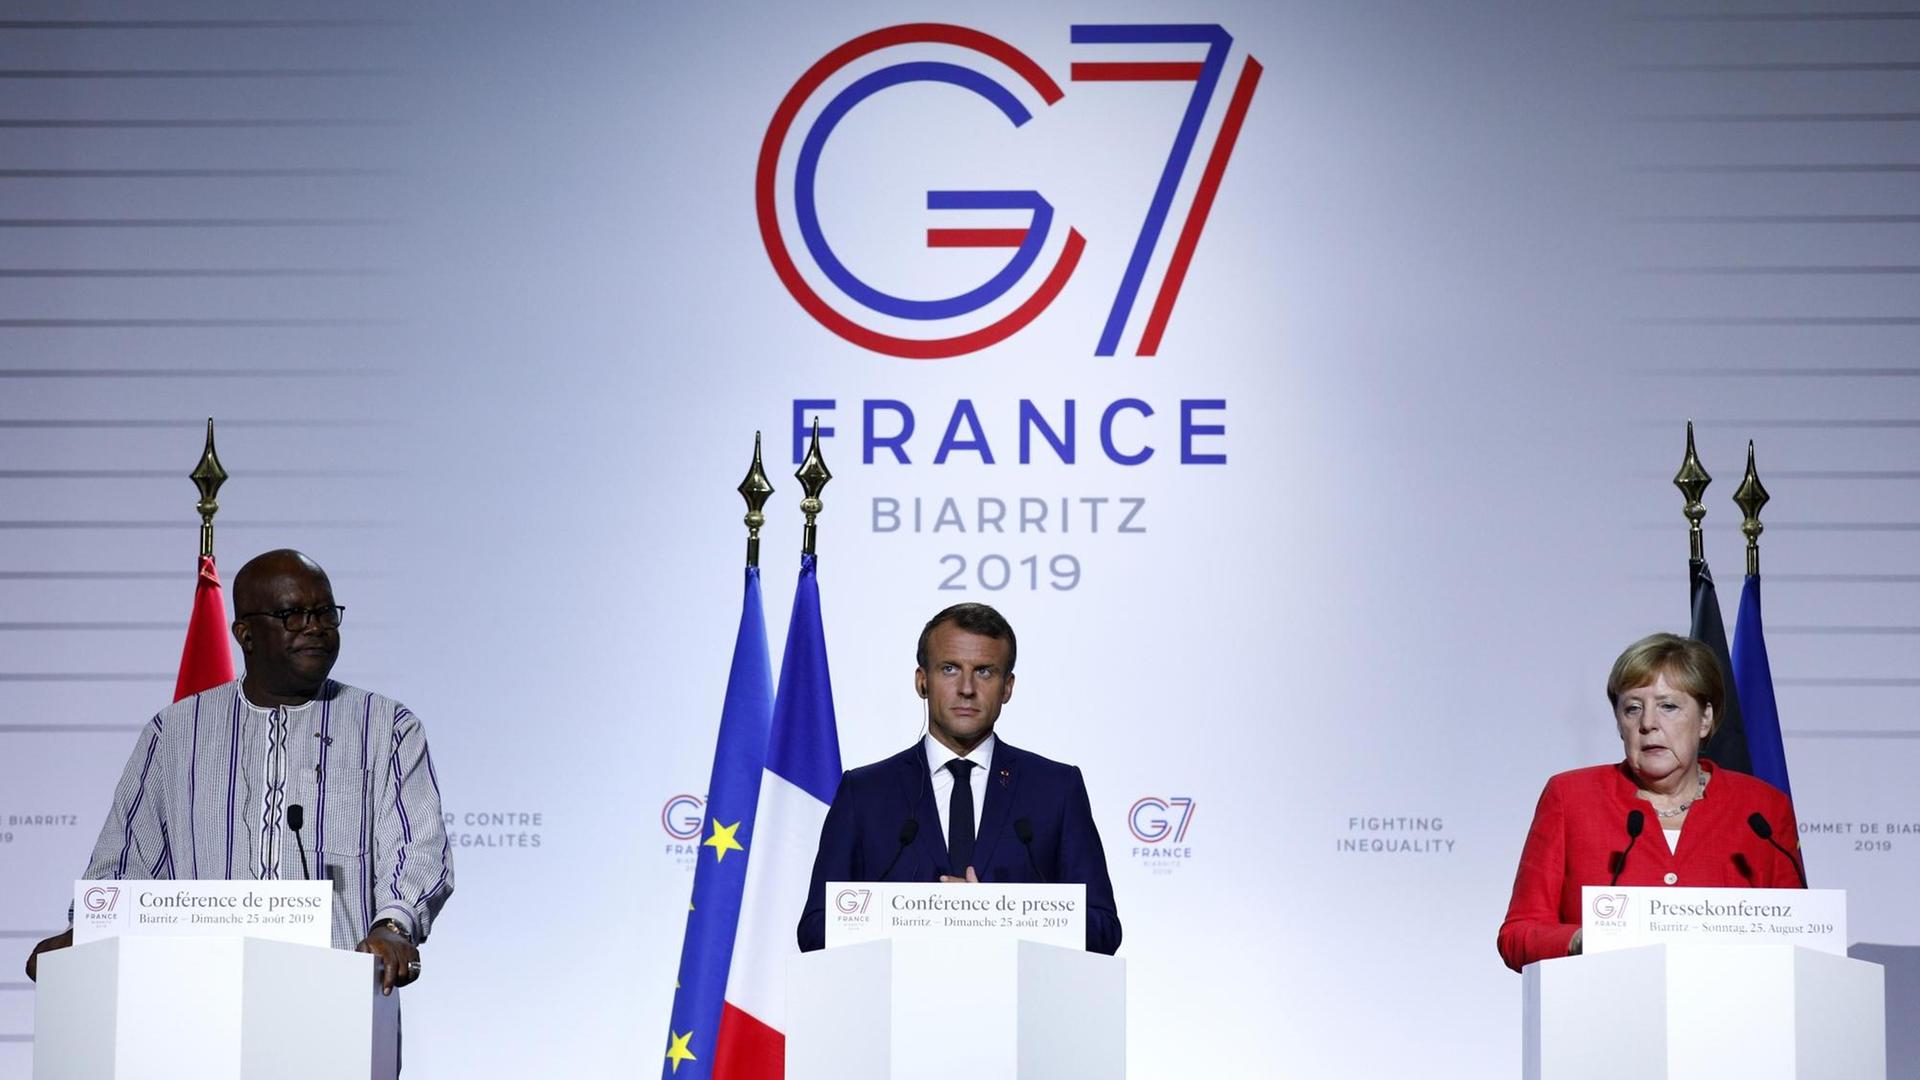 Bundeskanzlerin Angela Merkel (CDU), Roch Marc Christian Kabore, Präsident von Burkina Faso, und Emmanuel Macron, Präsident von Frankreich, geben eine Pressekonferenz im Rahmen des G7-Gipfels.